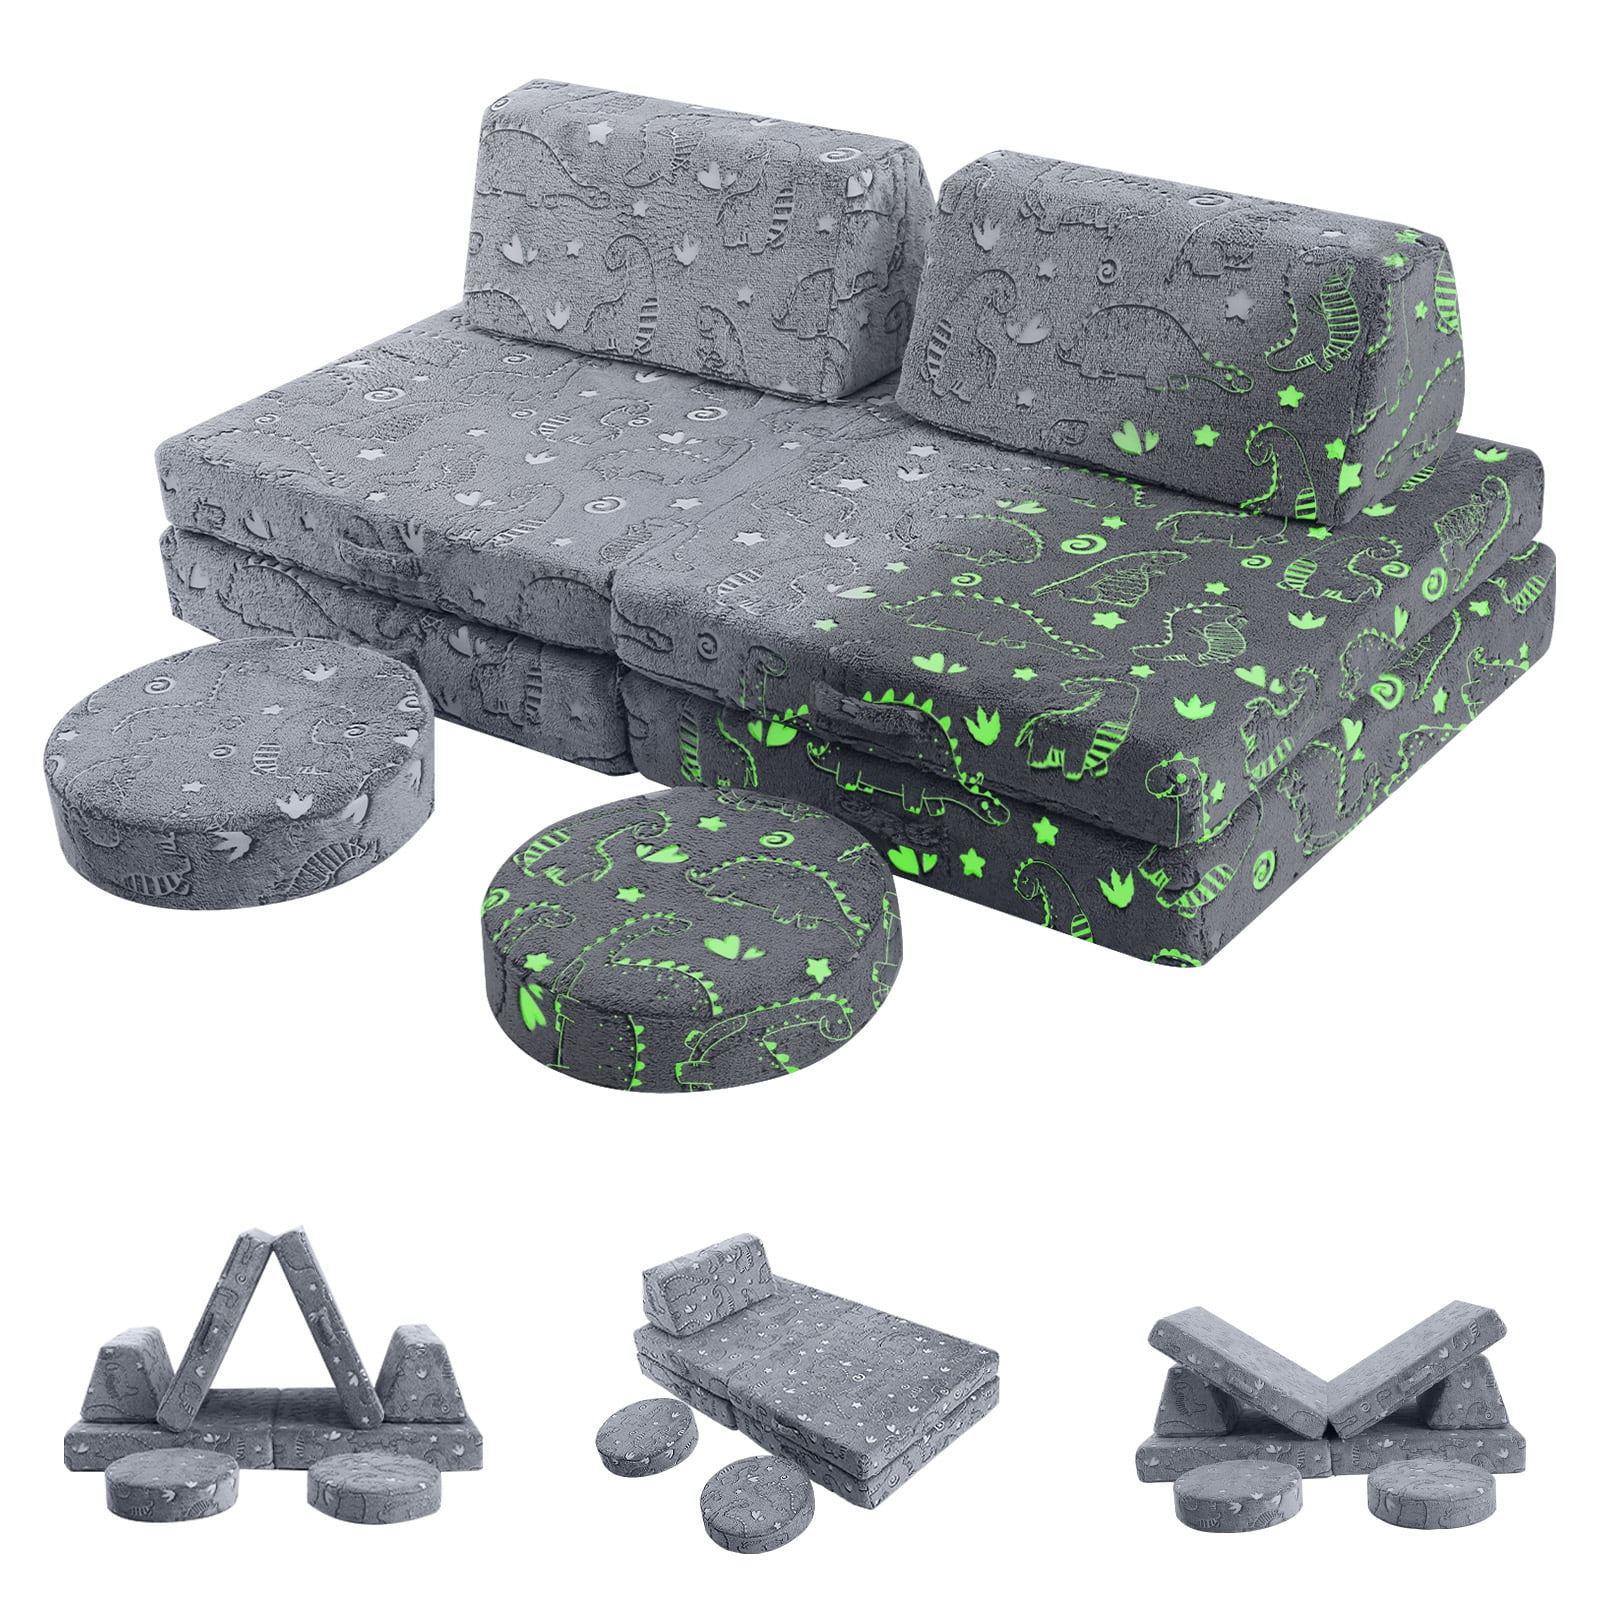  MeMoreCool Sofá para niños, sofá de espuma, sofá convertible  para juegos, verde : Hogar y Cocina